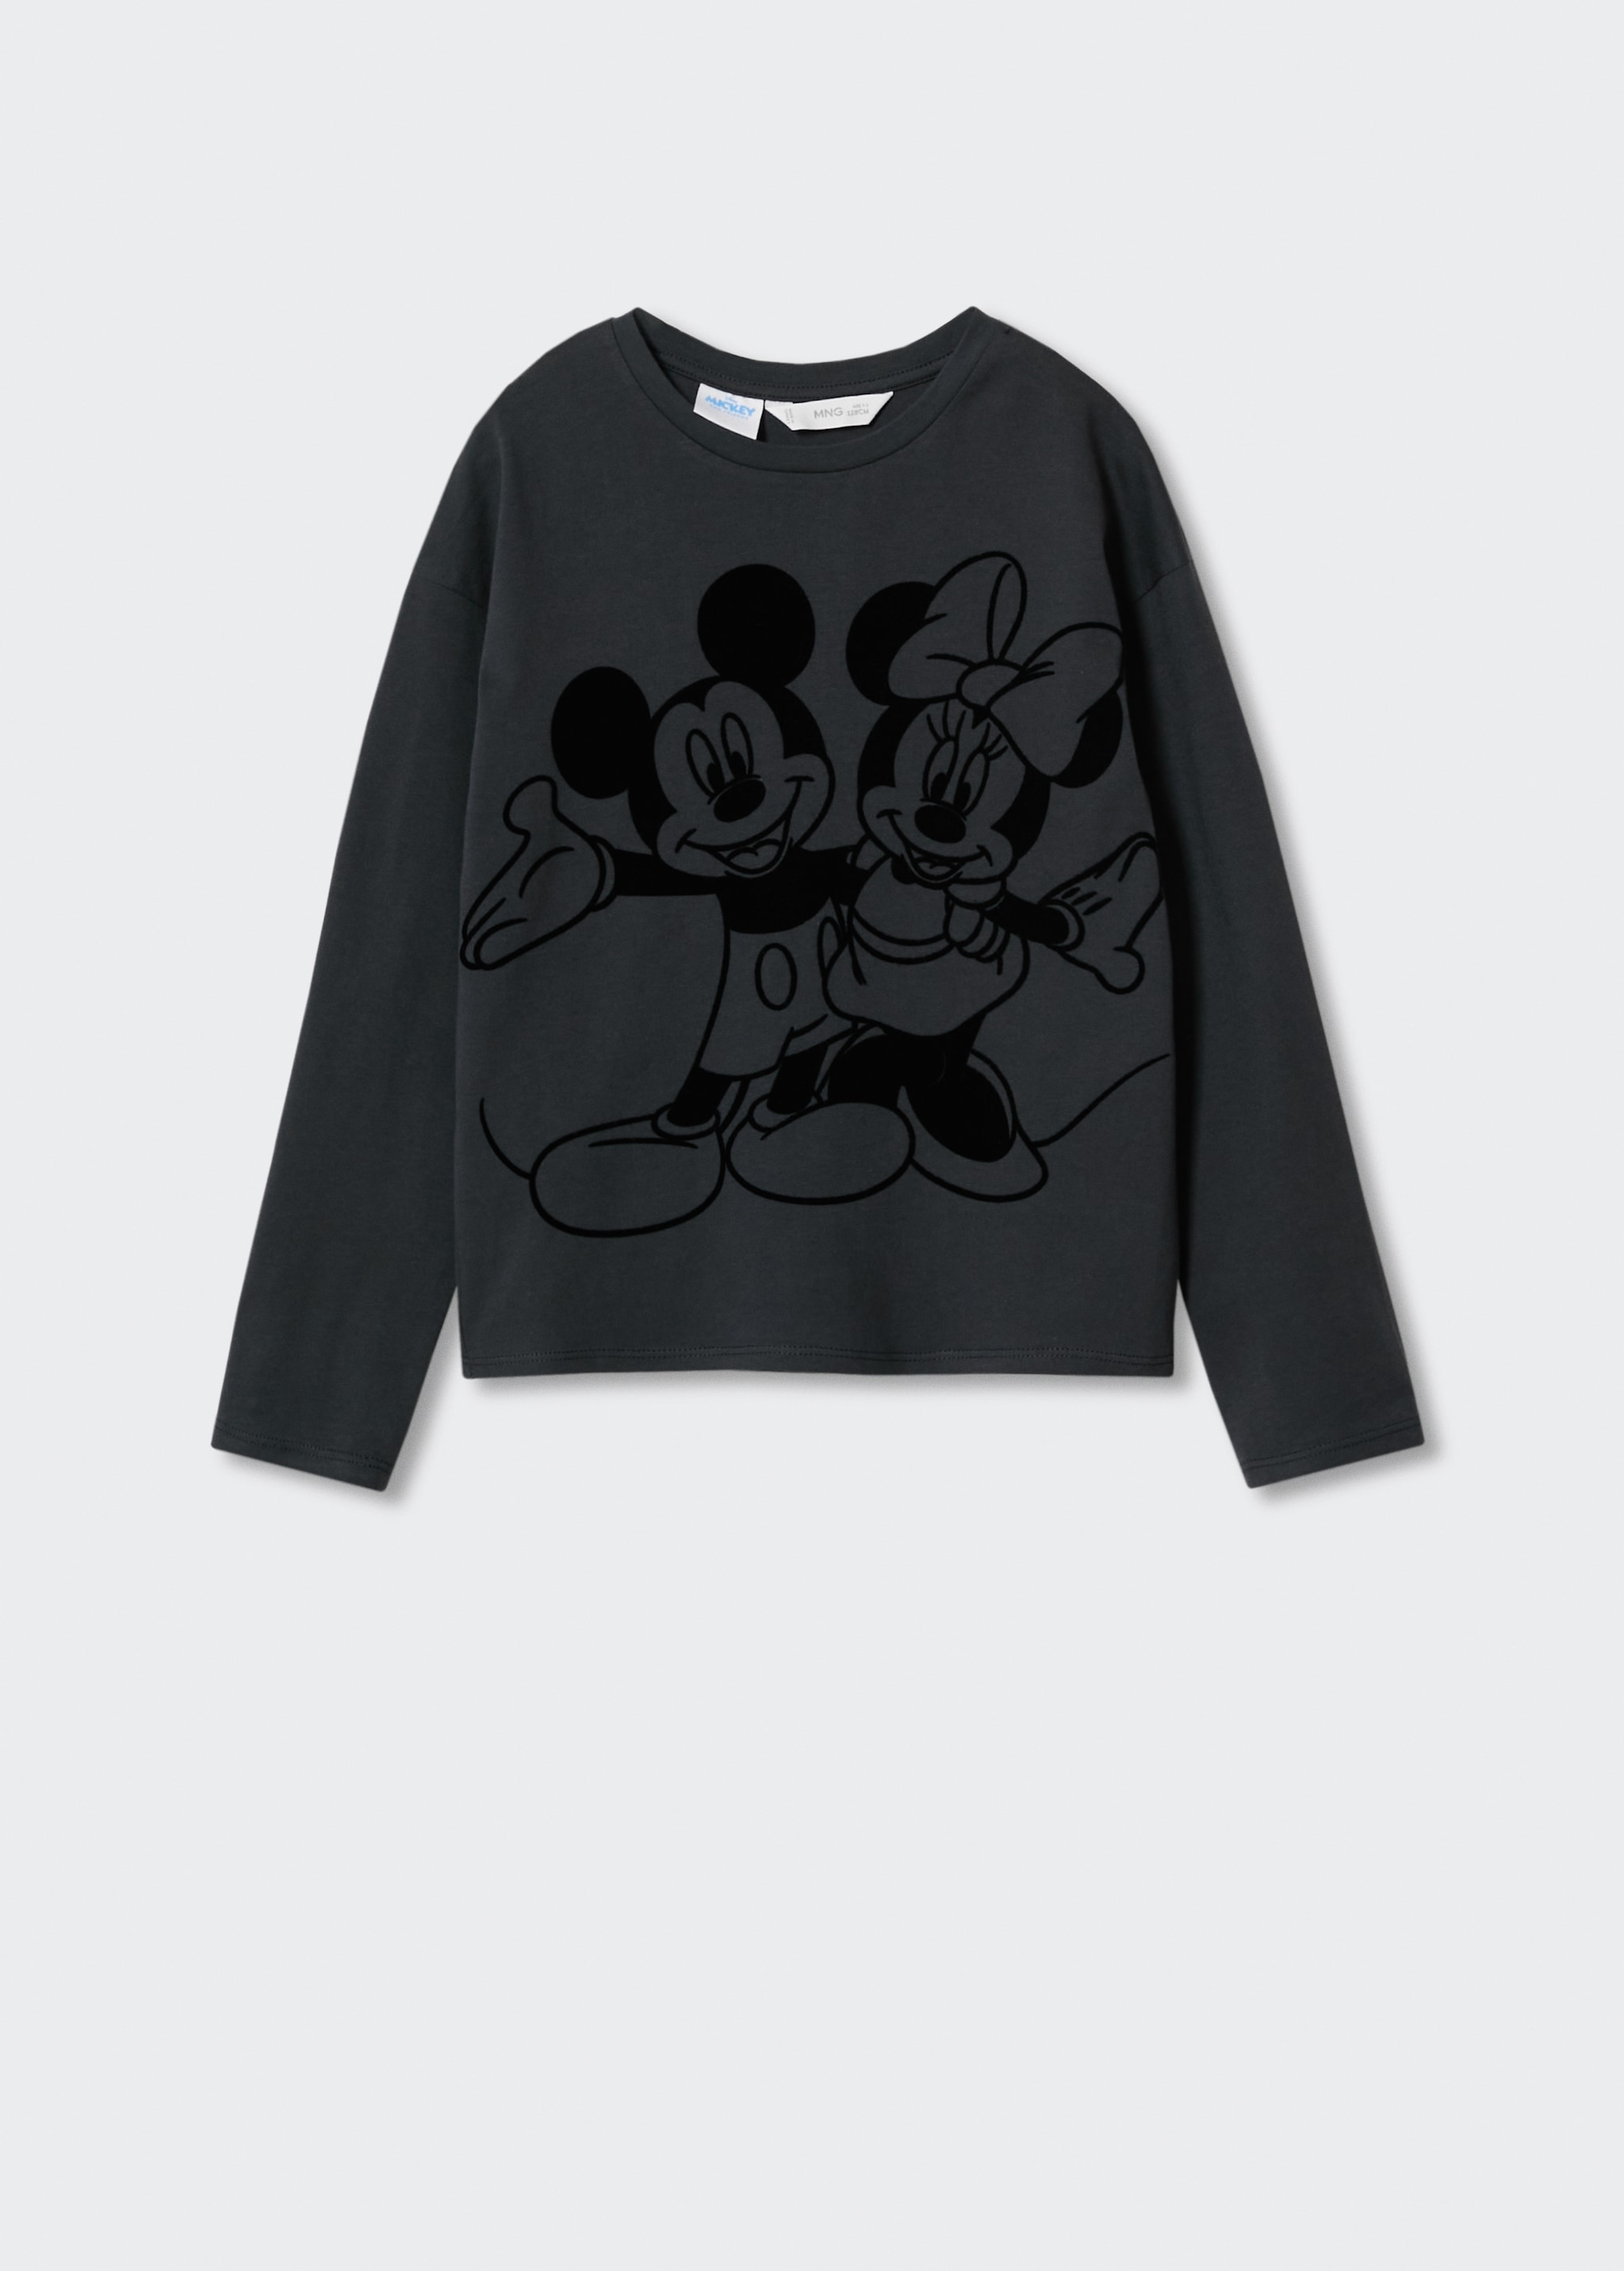 Camiseta Mickey y Minnie Mouse - Artículo sin modelo